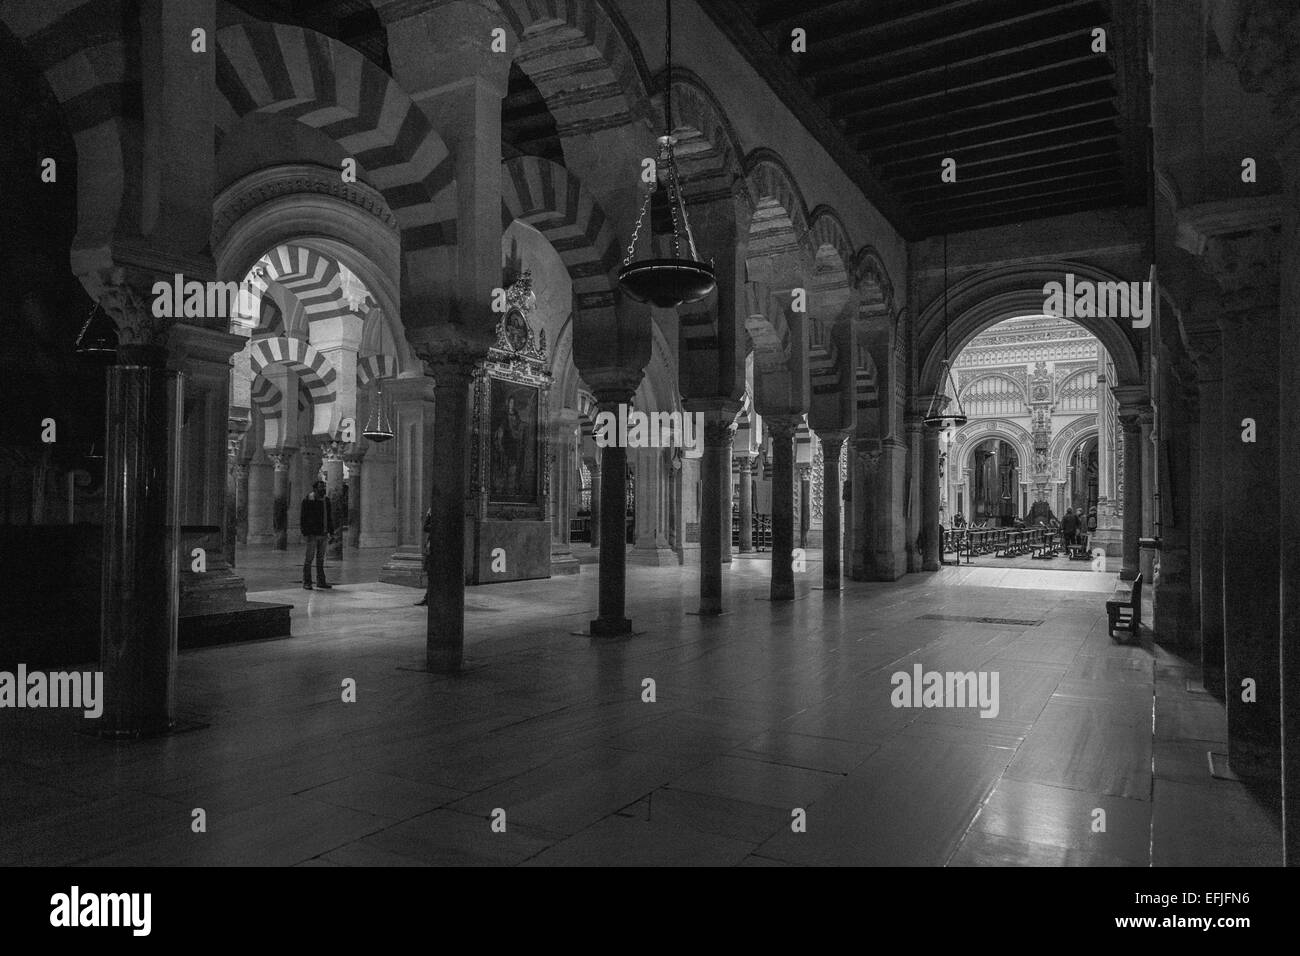 Moschea-Cattedrale, Cordoba Spagna; religioso, architettura storica, moresca, Stili islamici e cattolici. La Cattedrale di nostra Signora dell'Assunzione Foto Stock